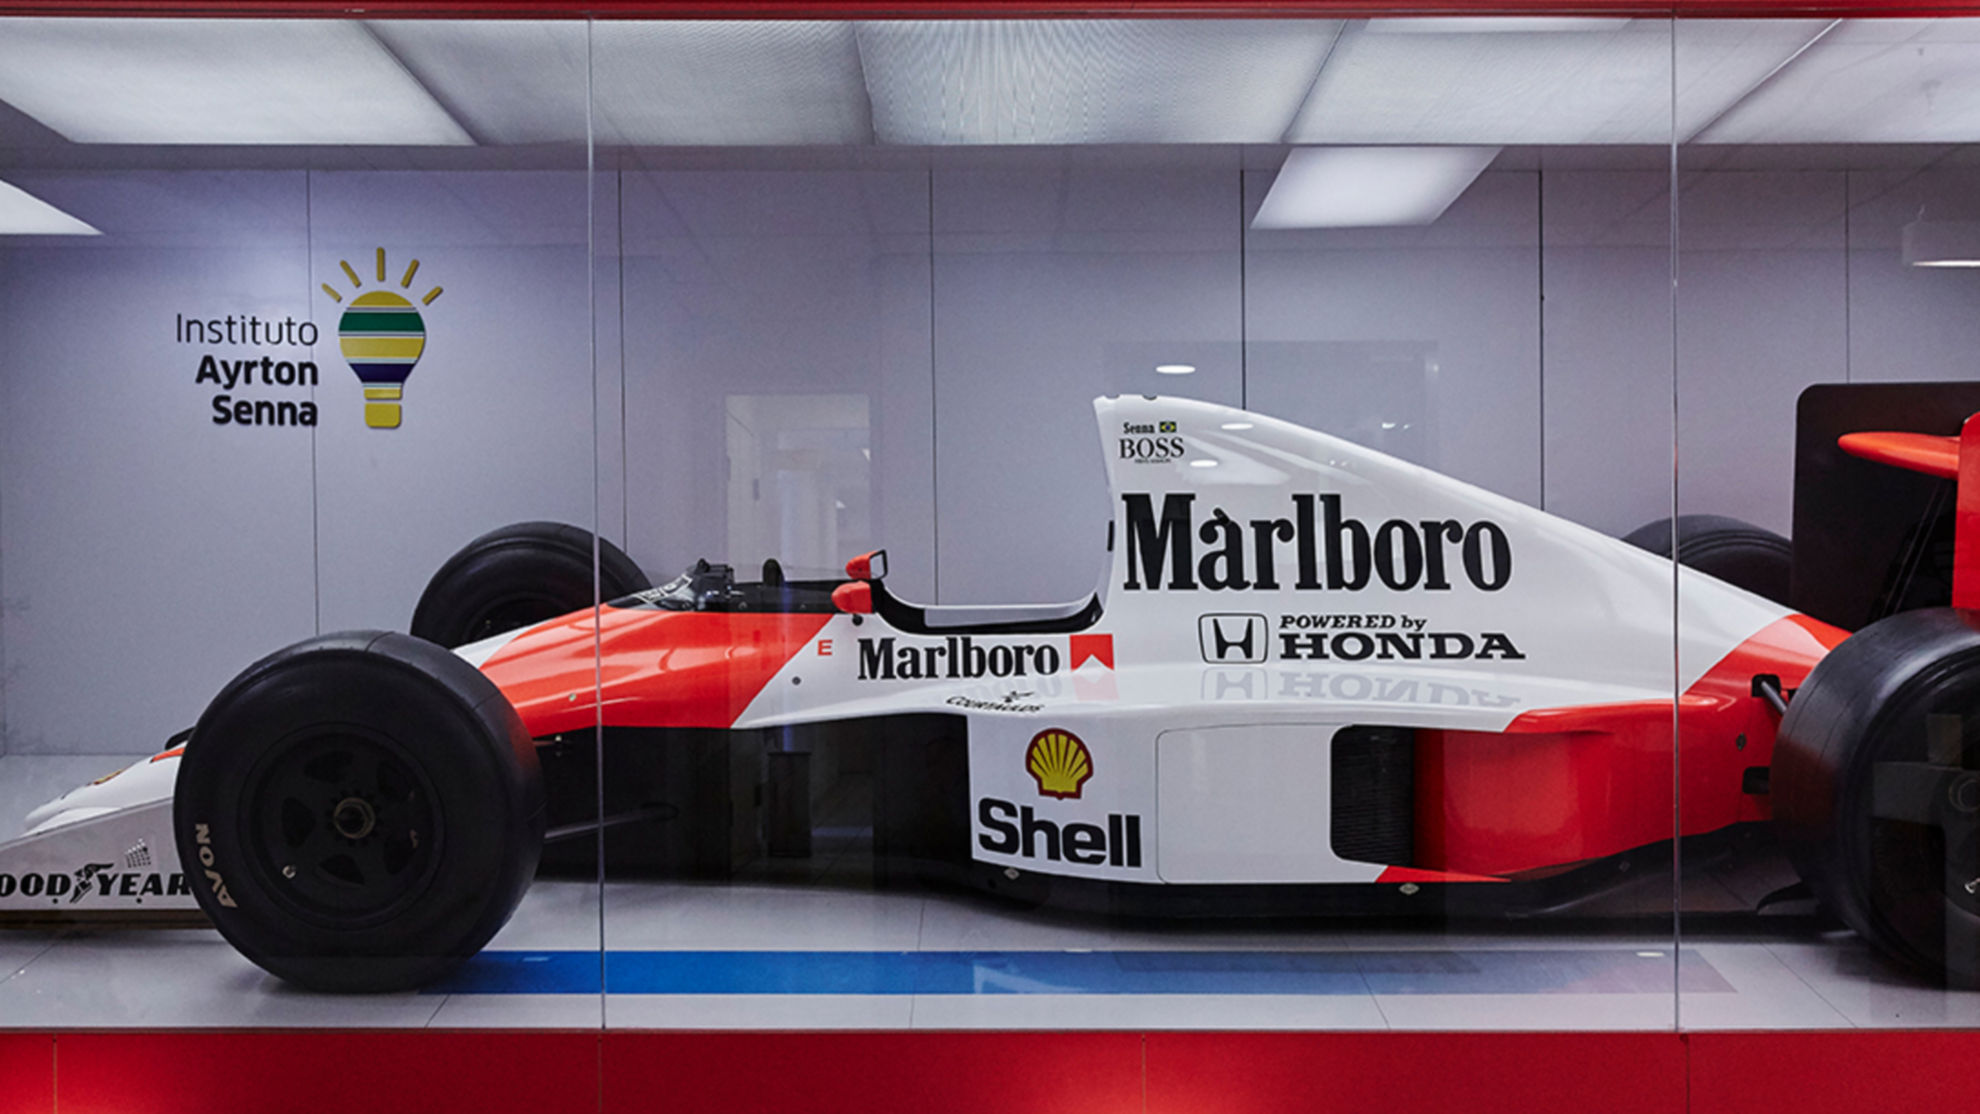 McLaren Senna - The Racing Legend Ayrton Senna